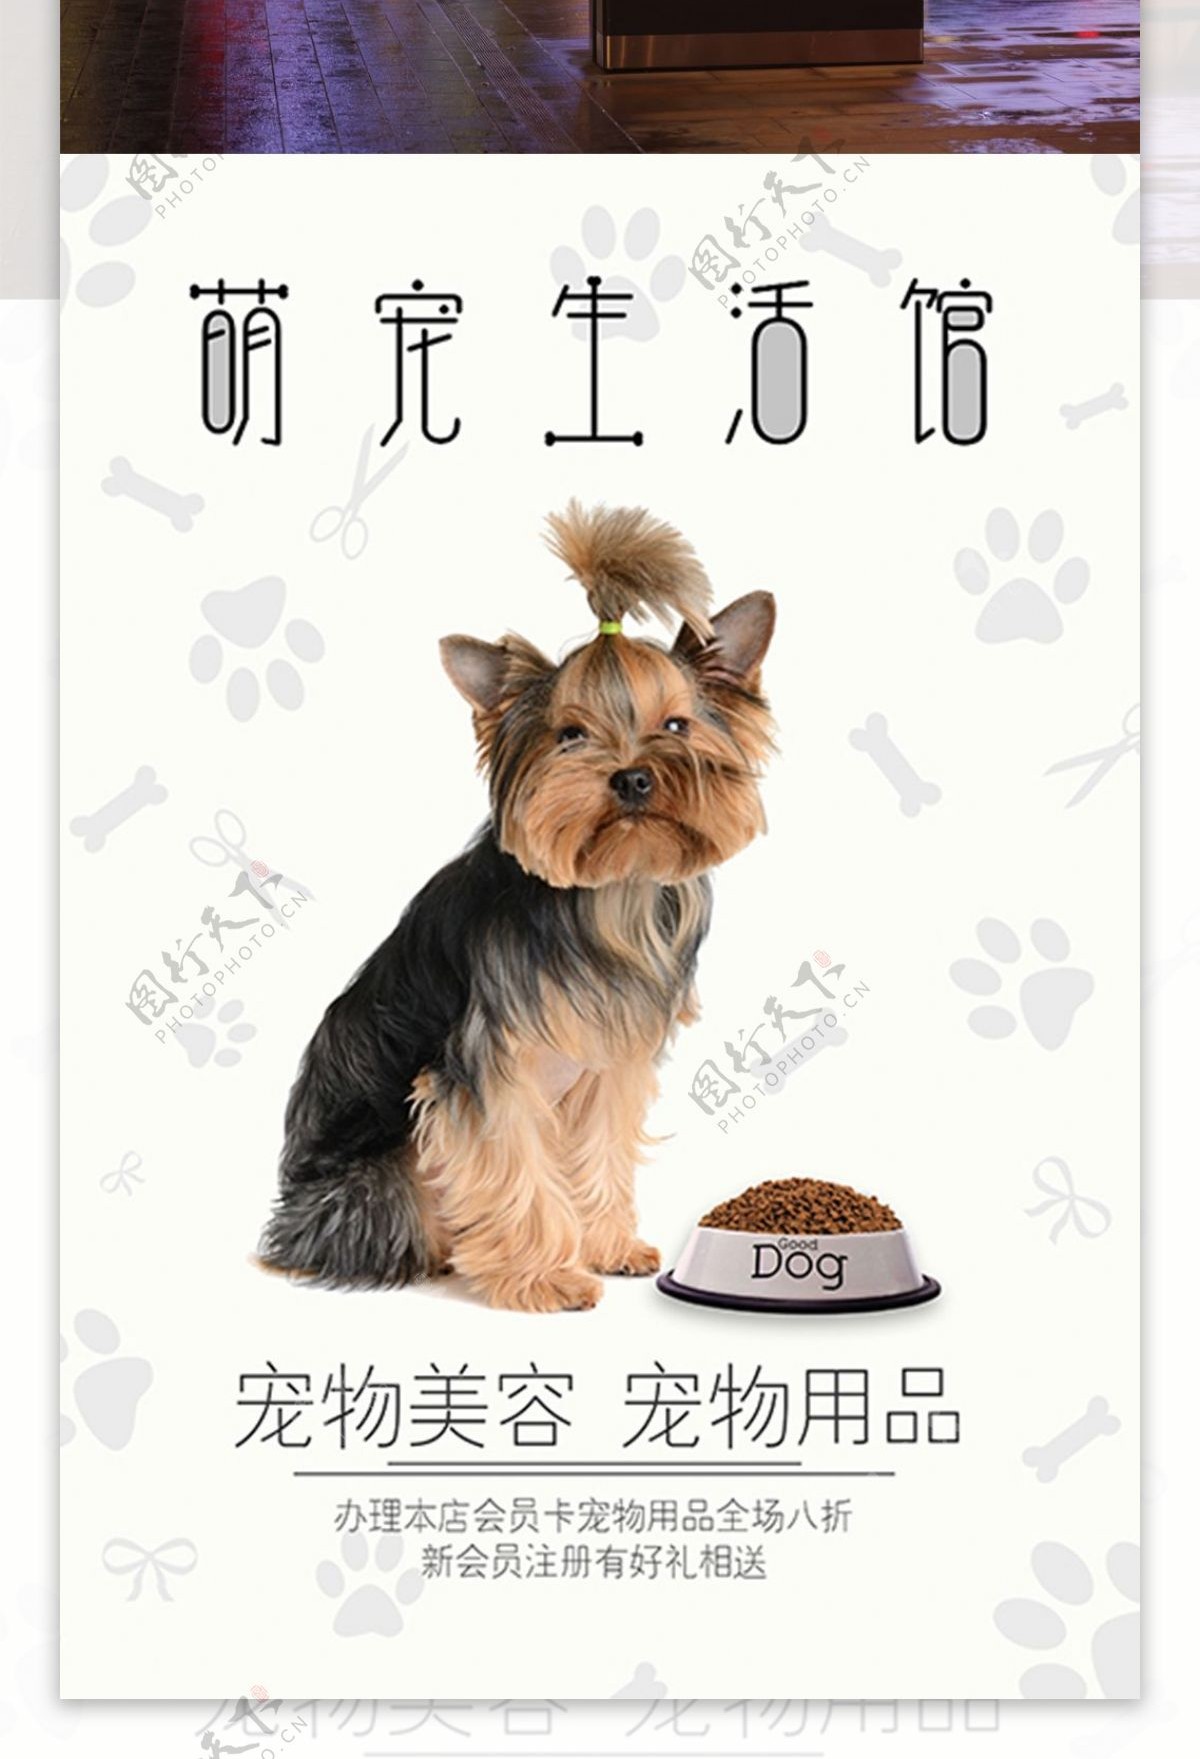 简约萌宠宠物店海报设计